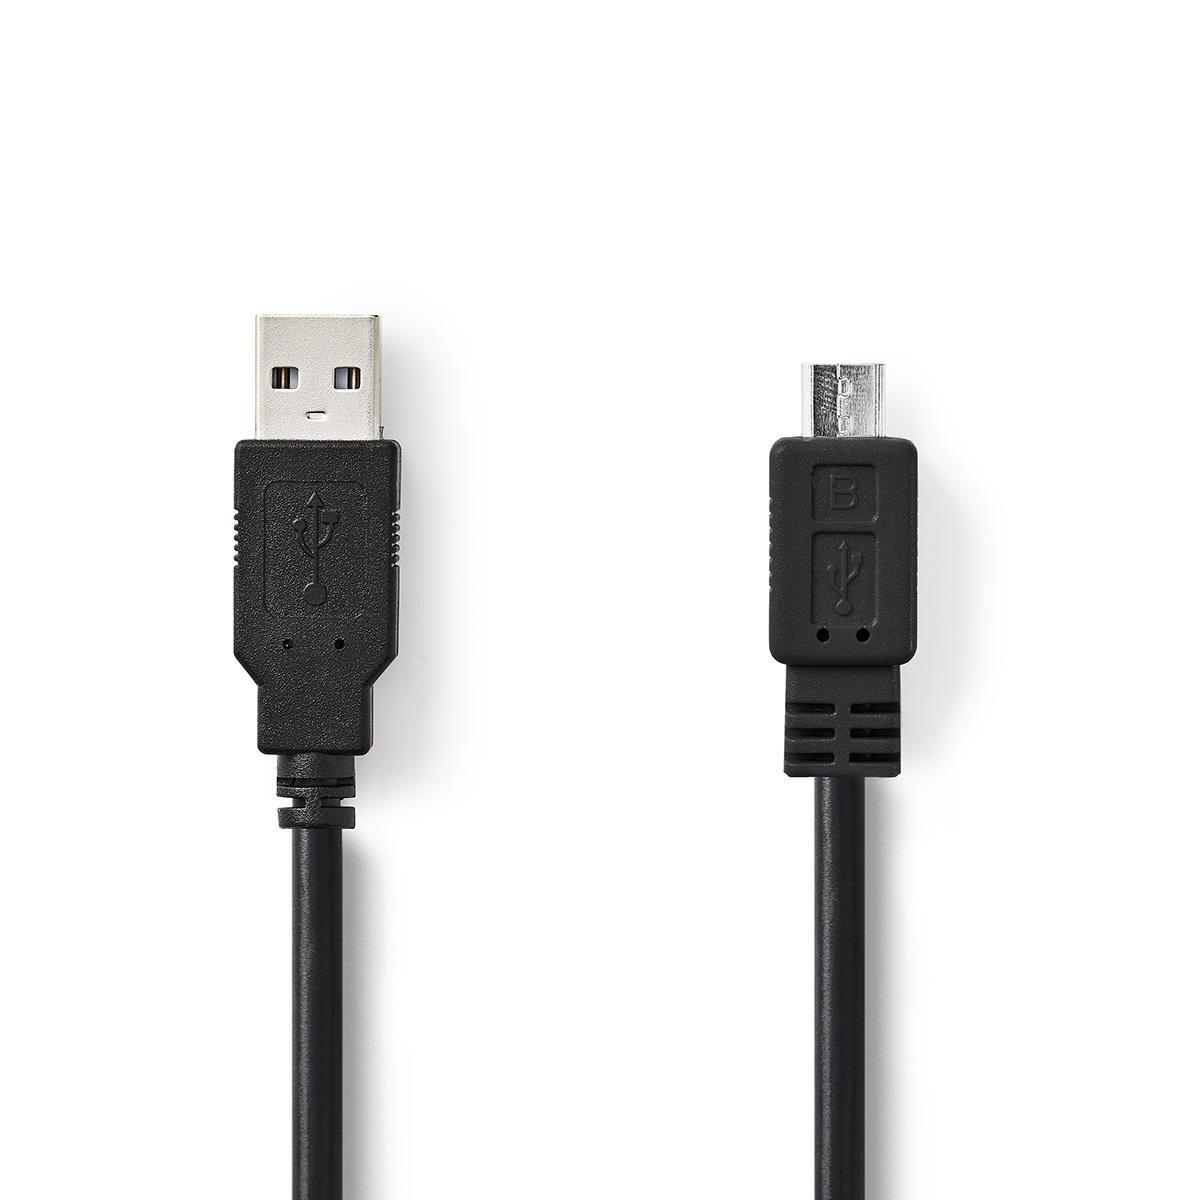 NEDIS USB 2.0 kabel | Zástrčka A – Micro B Zástrčka | 3 m | Černá barva